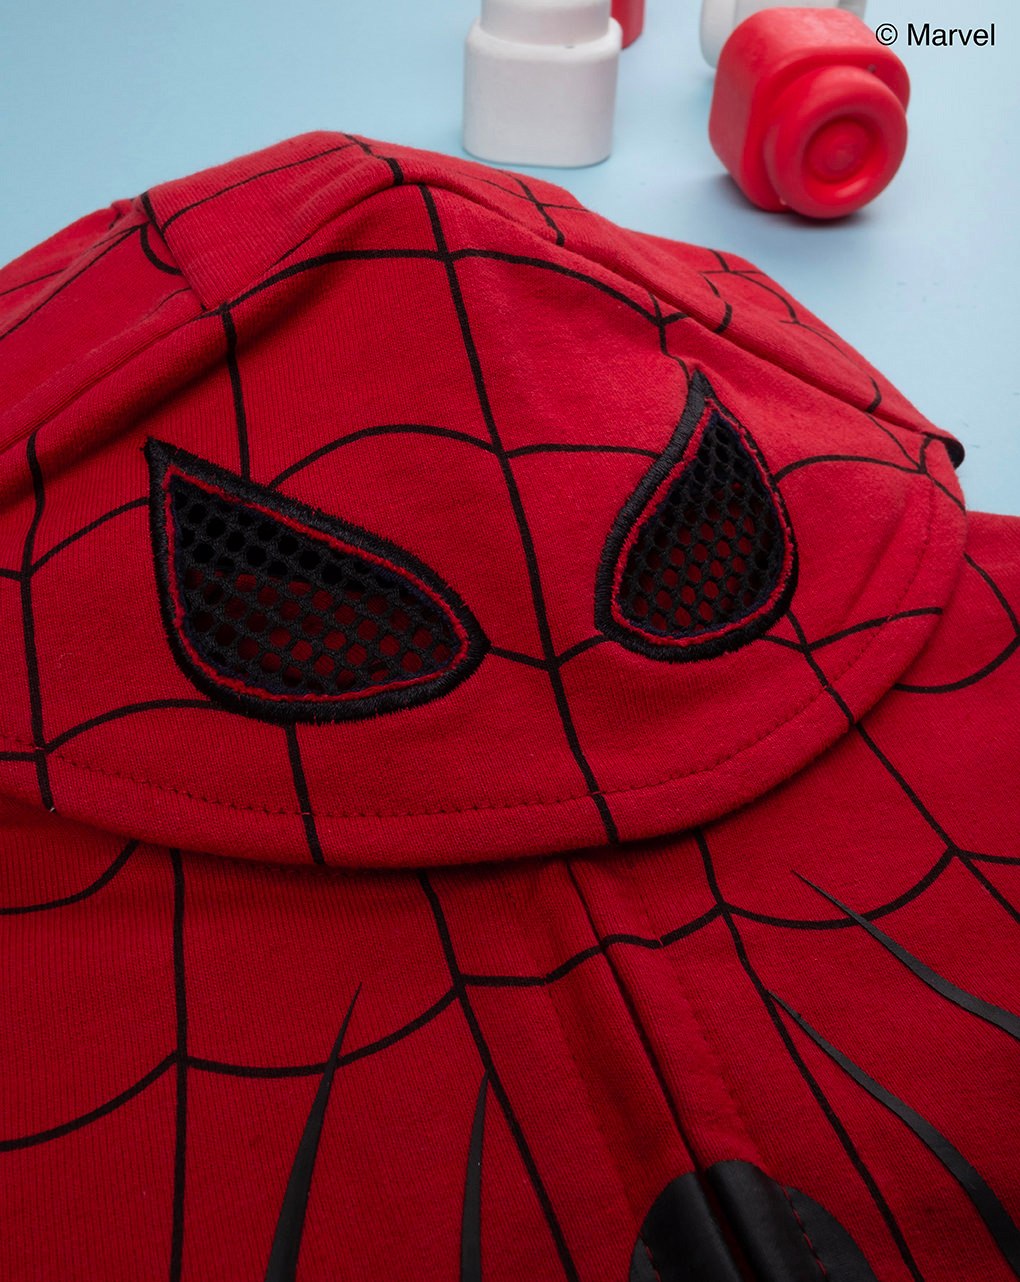 παιδικό σετ ζακέτα και φόρμα spiderman για αγόρι - Prénatal